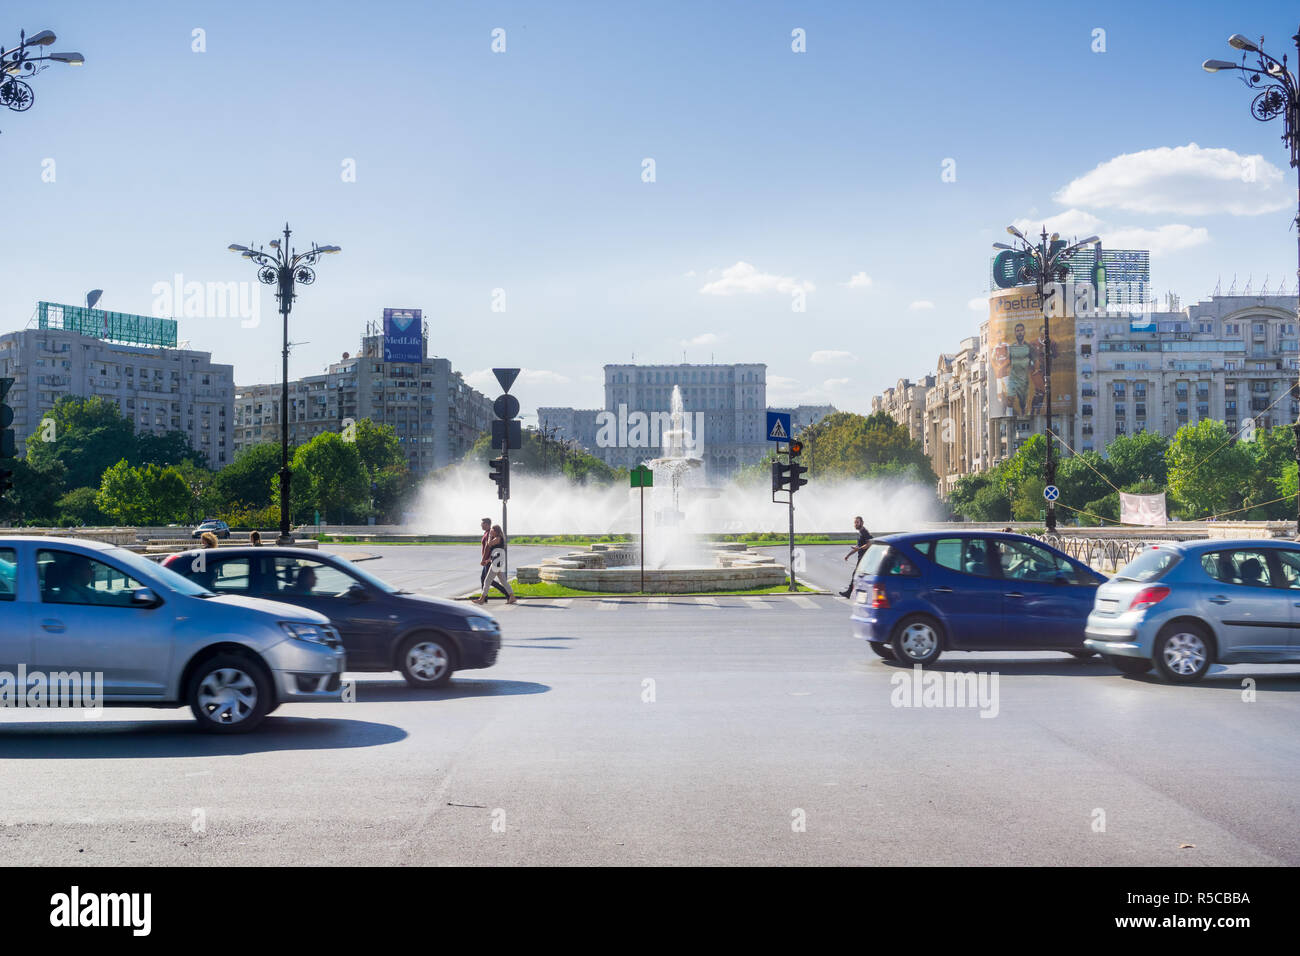 18 septembre 2017, Bucarest/Roumanie - Cars en passant par la Place Unirii, l'eau des fontaines et la Maison du Parlement à l'arrière-plan Banque D'Images